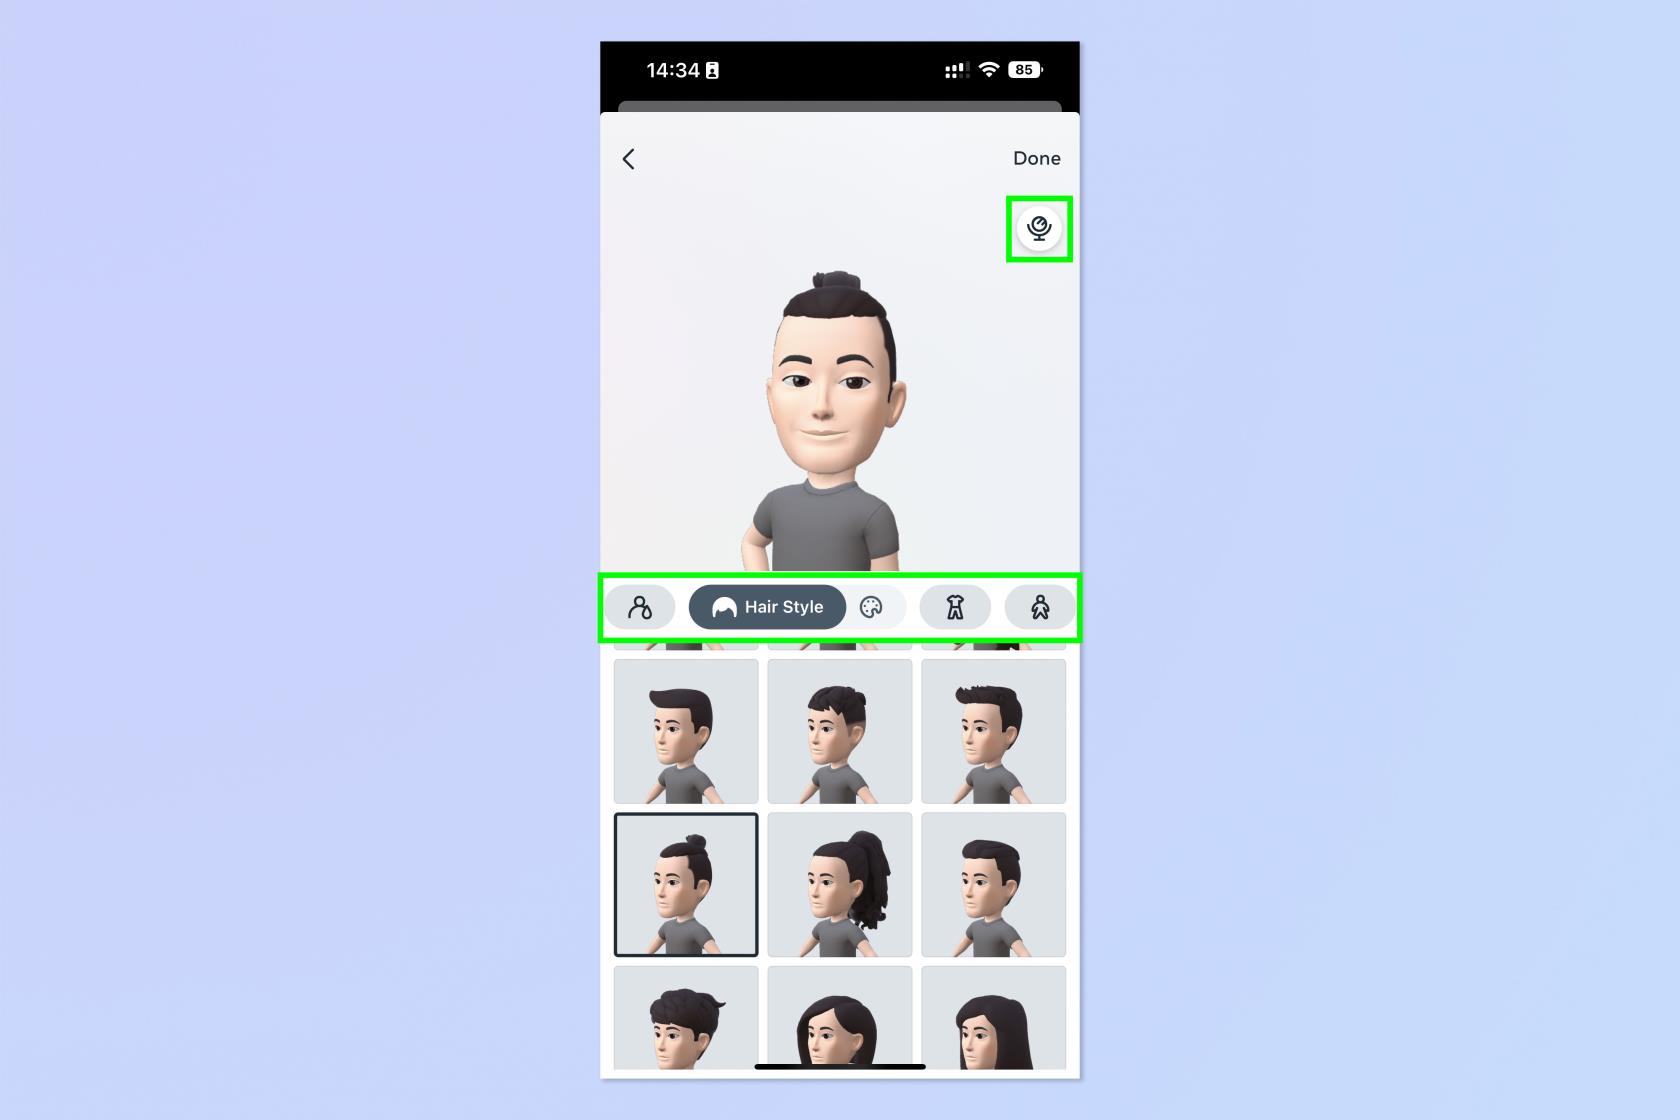 Agora você pode criar avatares do WhatsApp - veja como